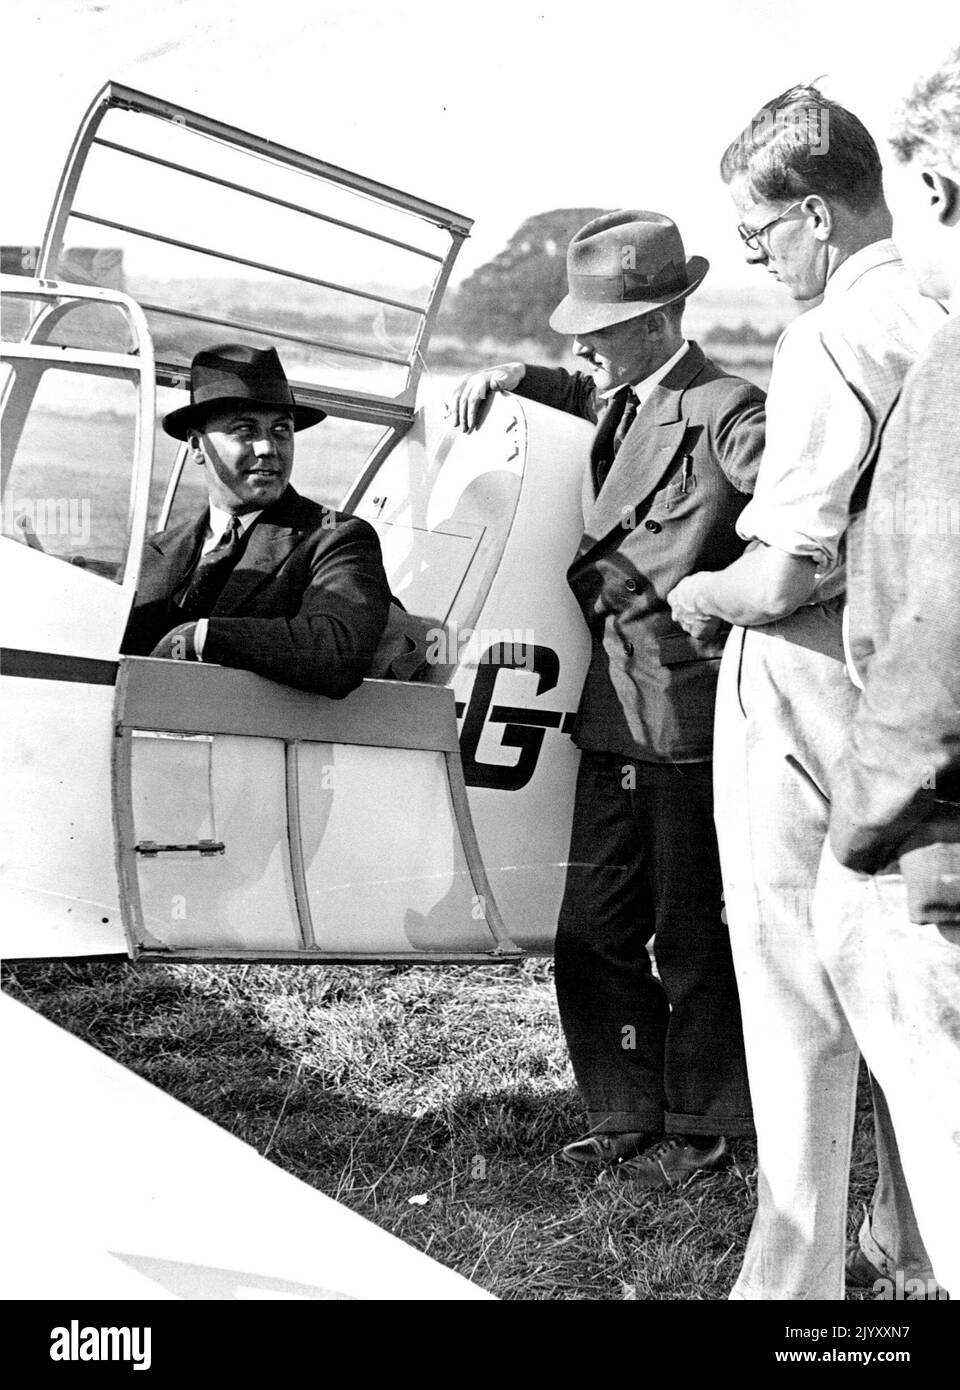 ***** Für das King's Cup Air Race Percival, der im Flugplatz Luton das Viscountess Wakefield von Hythes 'Percival 'Mew Gull' im Air Race fliegt und mit Beratern über das Flugzeug spricht. 18. Oktober 1937. (Foto von LNA). Stockfoto